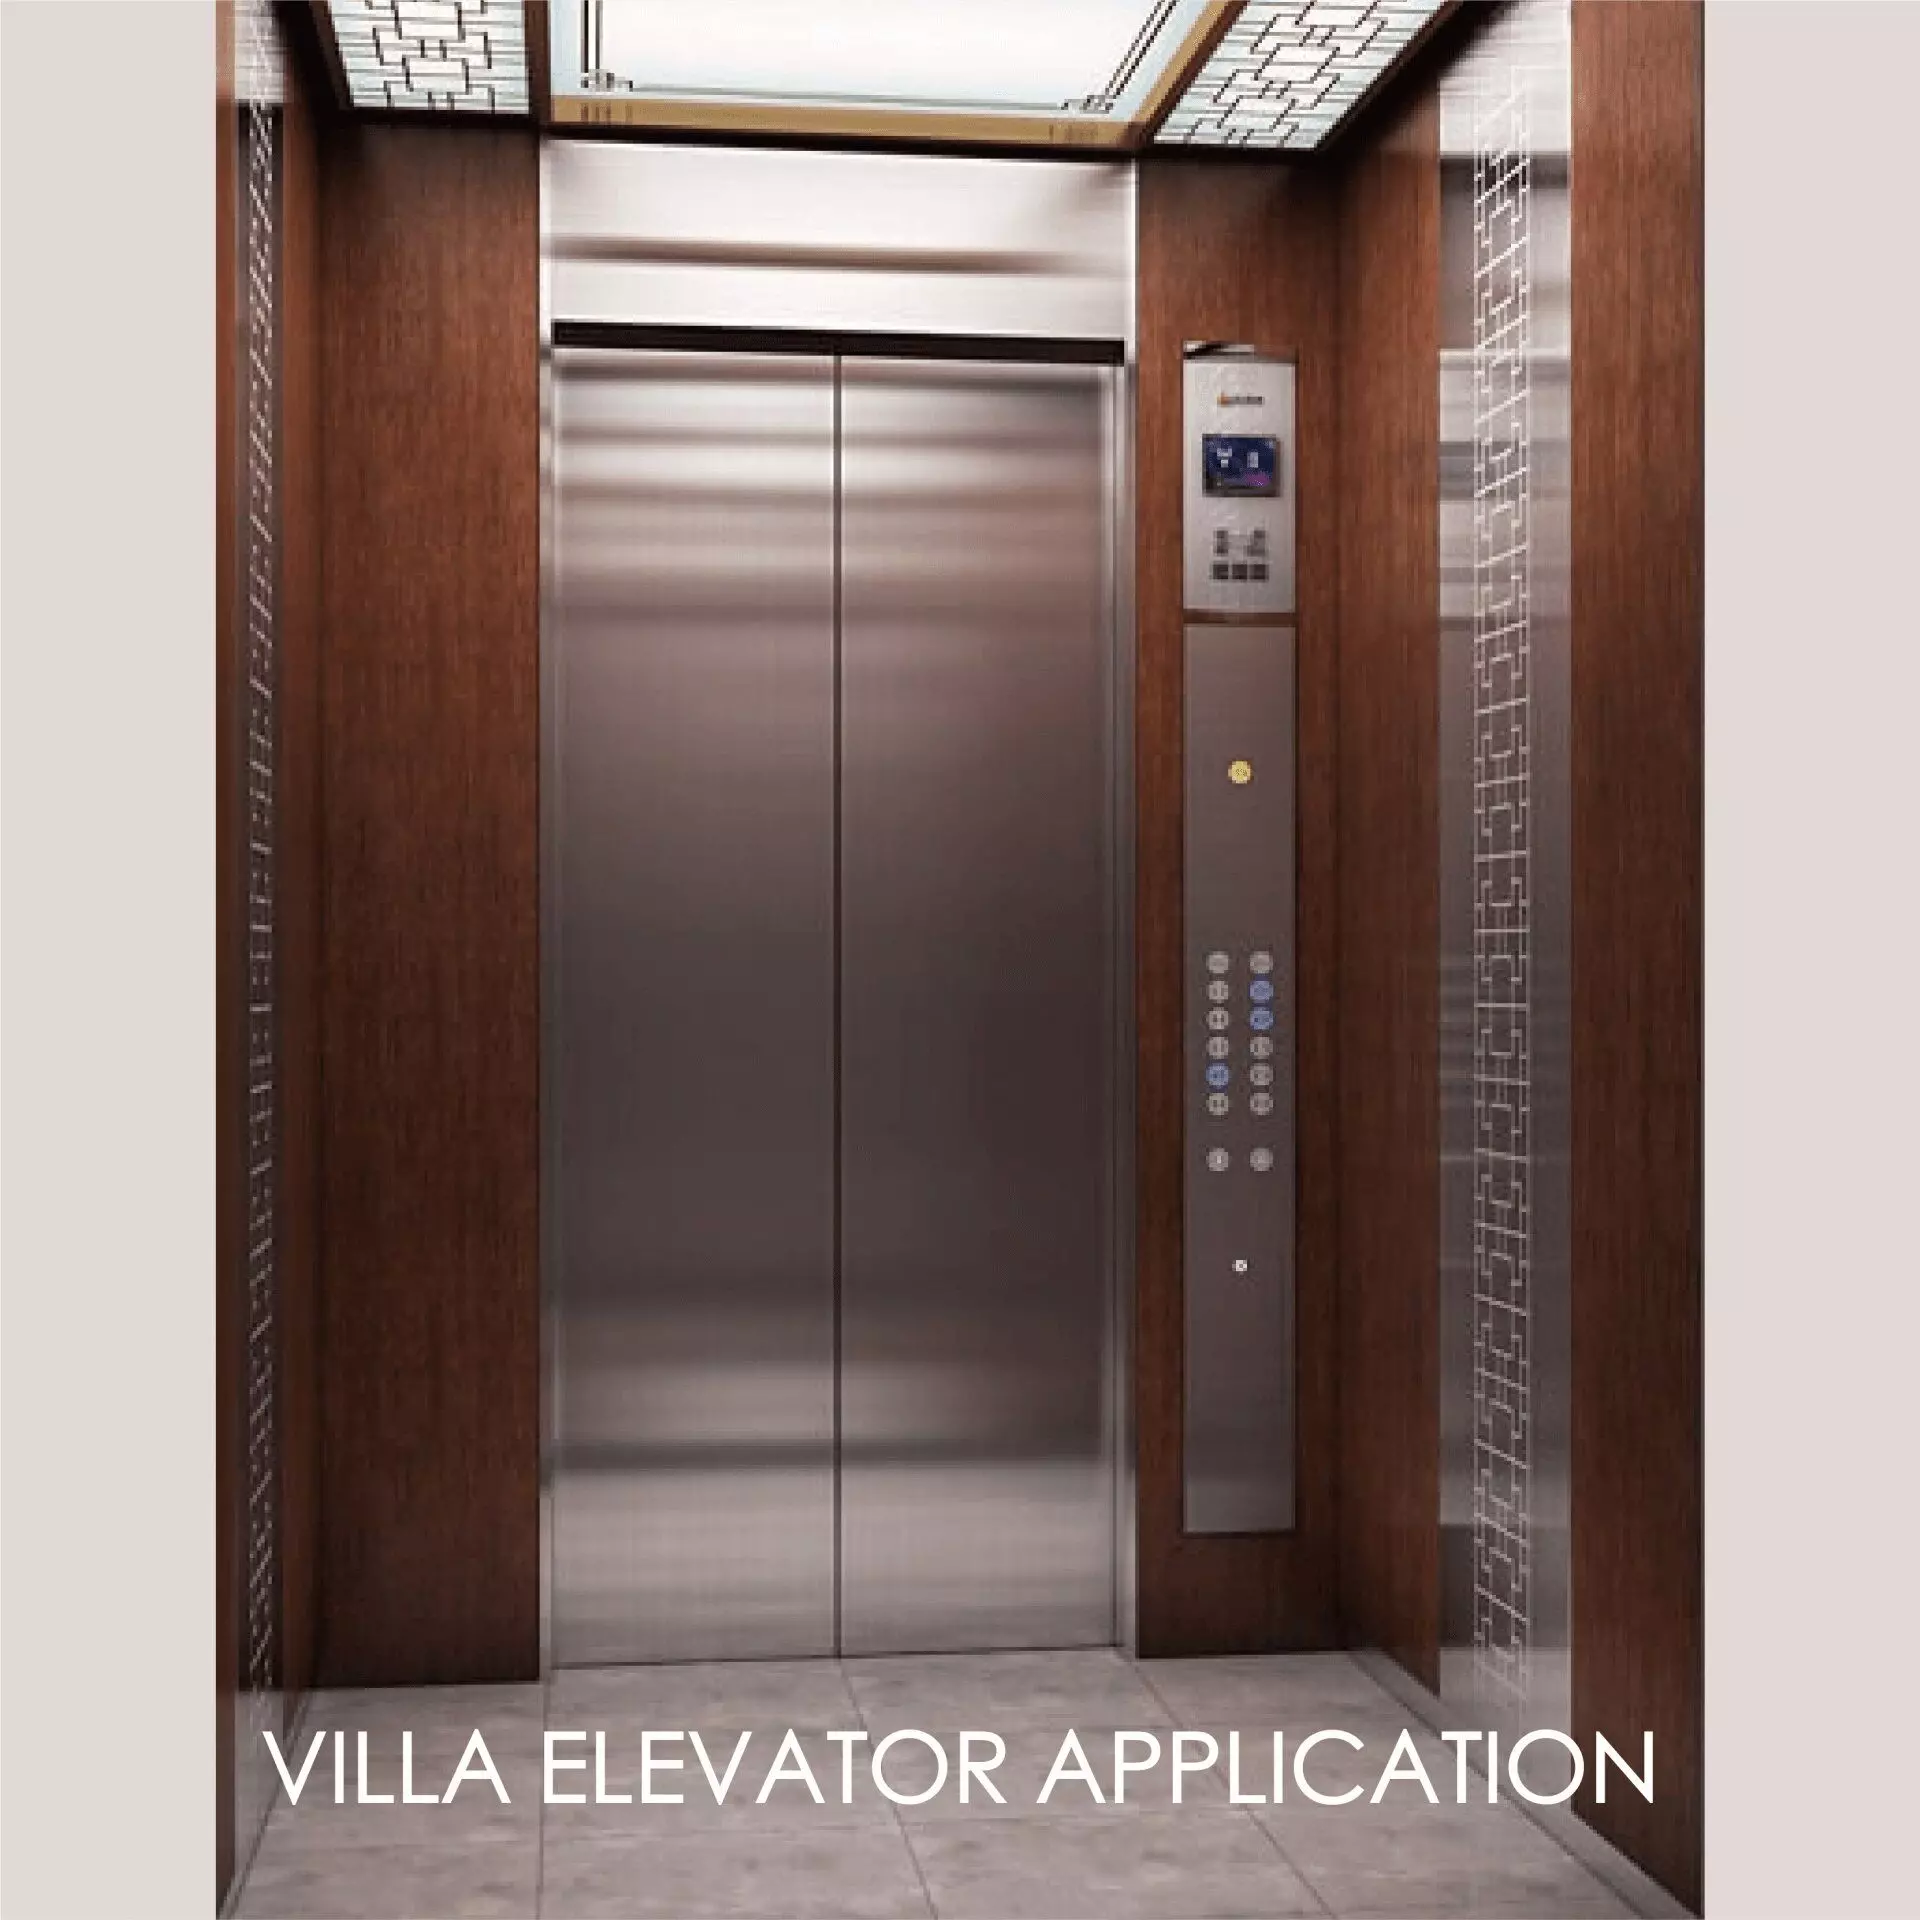 L'utilisation de métal stratifié pour décorer le panneau de porte de l'ascenseur et l'espace intérieur peut créer l'esthétique et la durabilité.